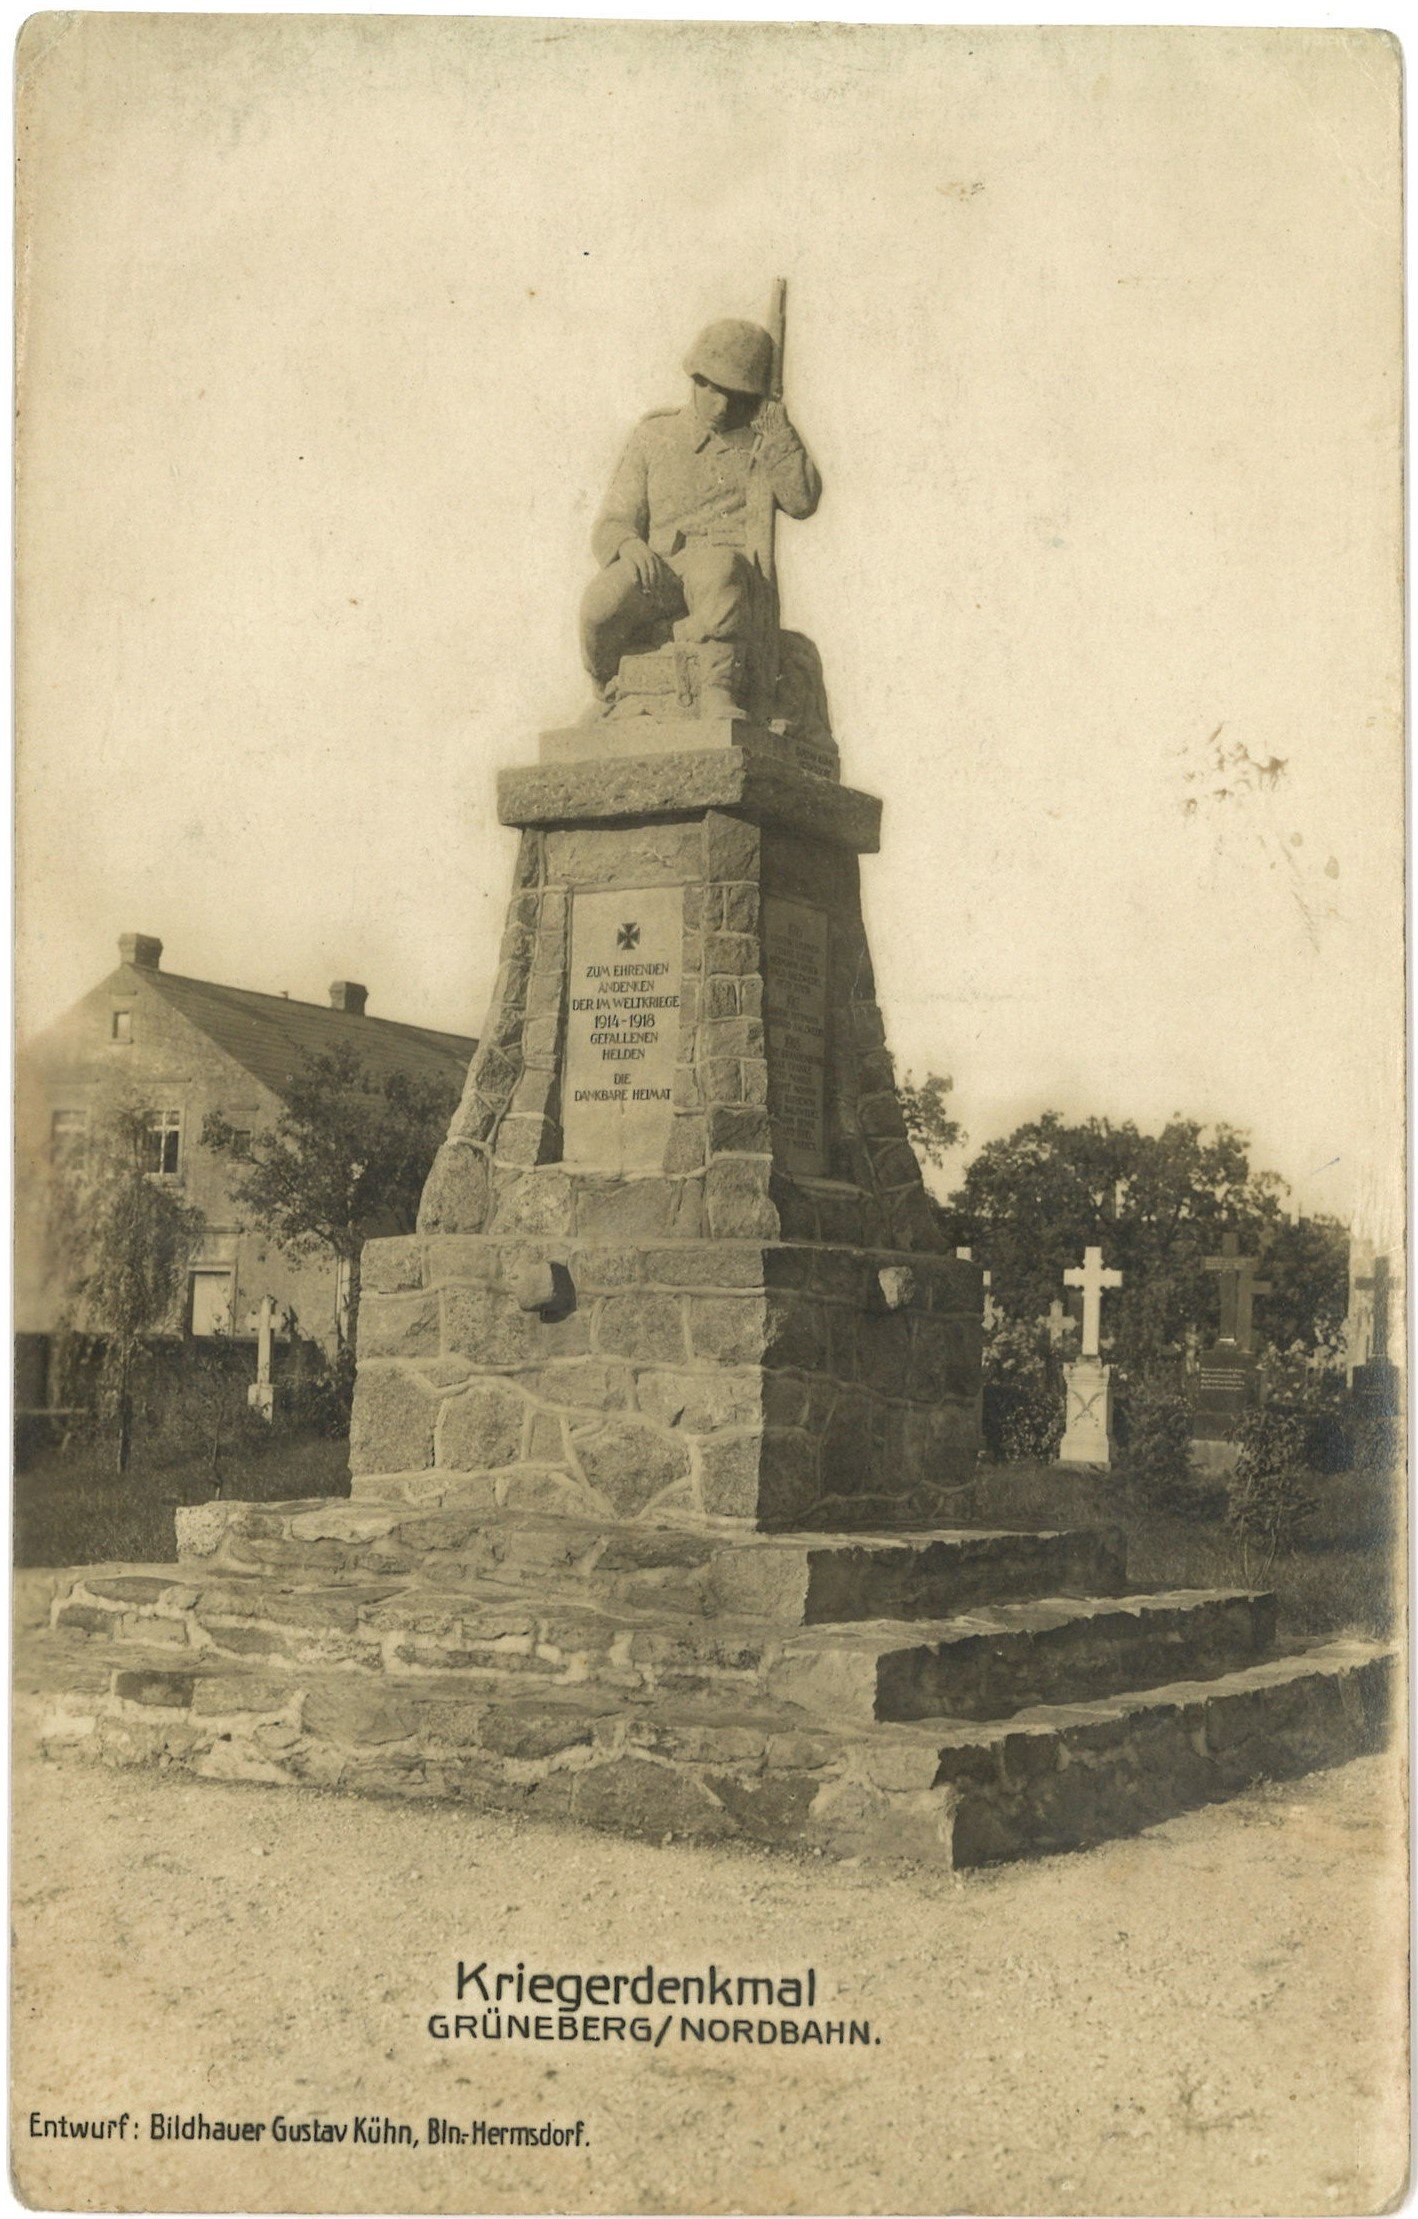 Grüneberg (Nordbahn): Kriegerdenkmal (Landesgeschichtliche Vereinigung für die Mark Brandenburg e.V., Archiv CC BY)